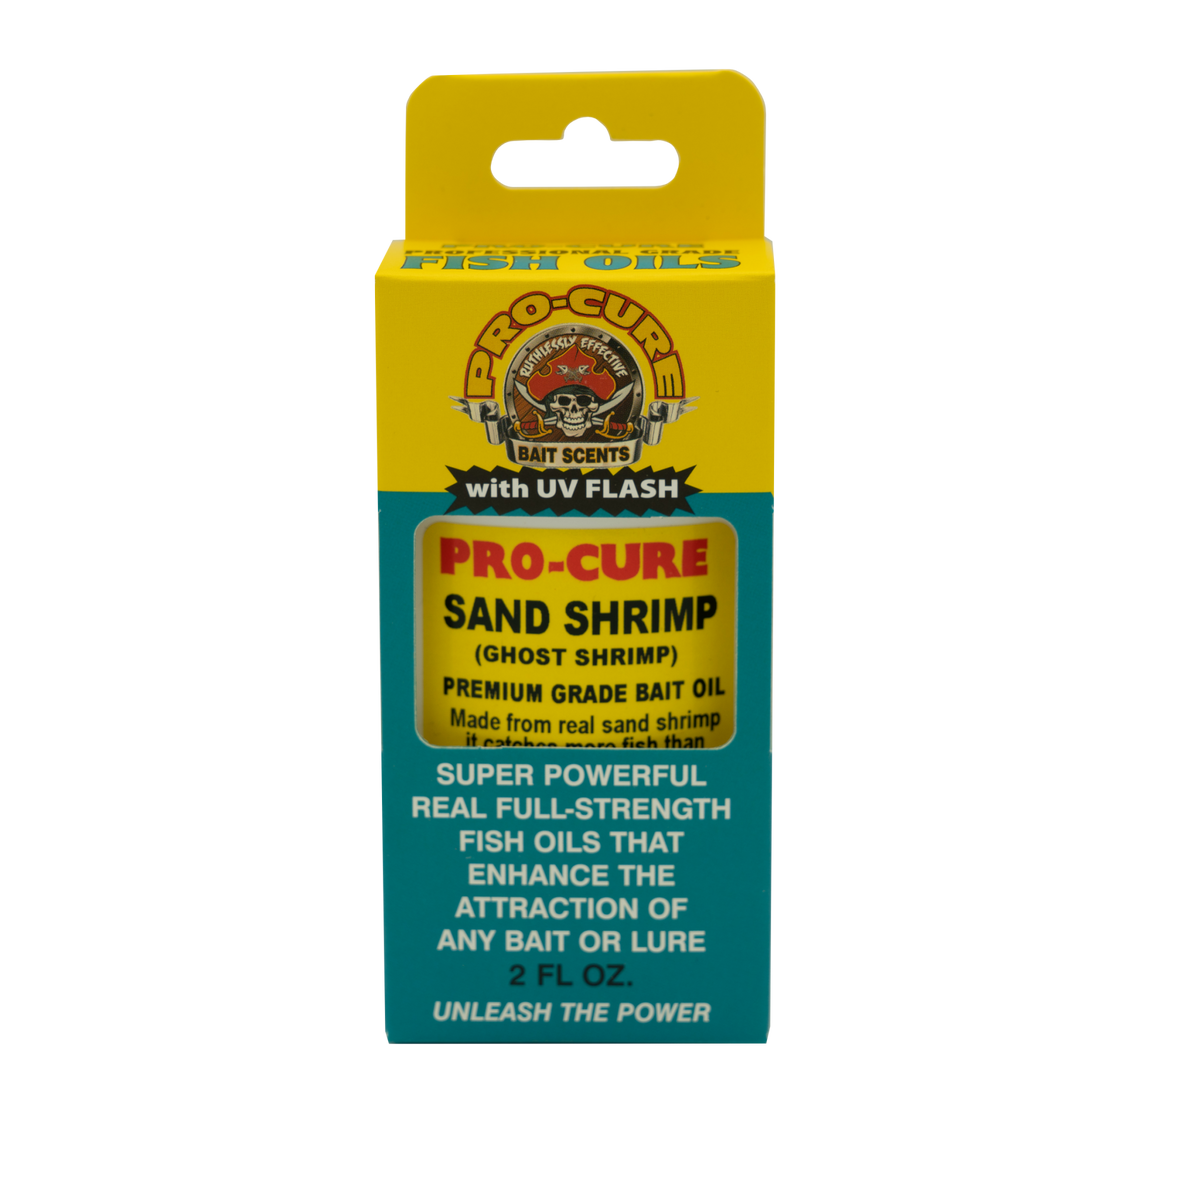 SAND SHRIMP (GHOST SHRIMP) BAIT OIL – Pro-Cure, Inc